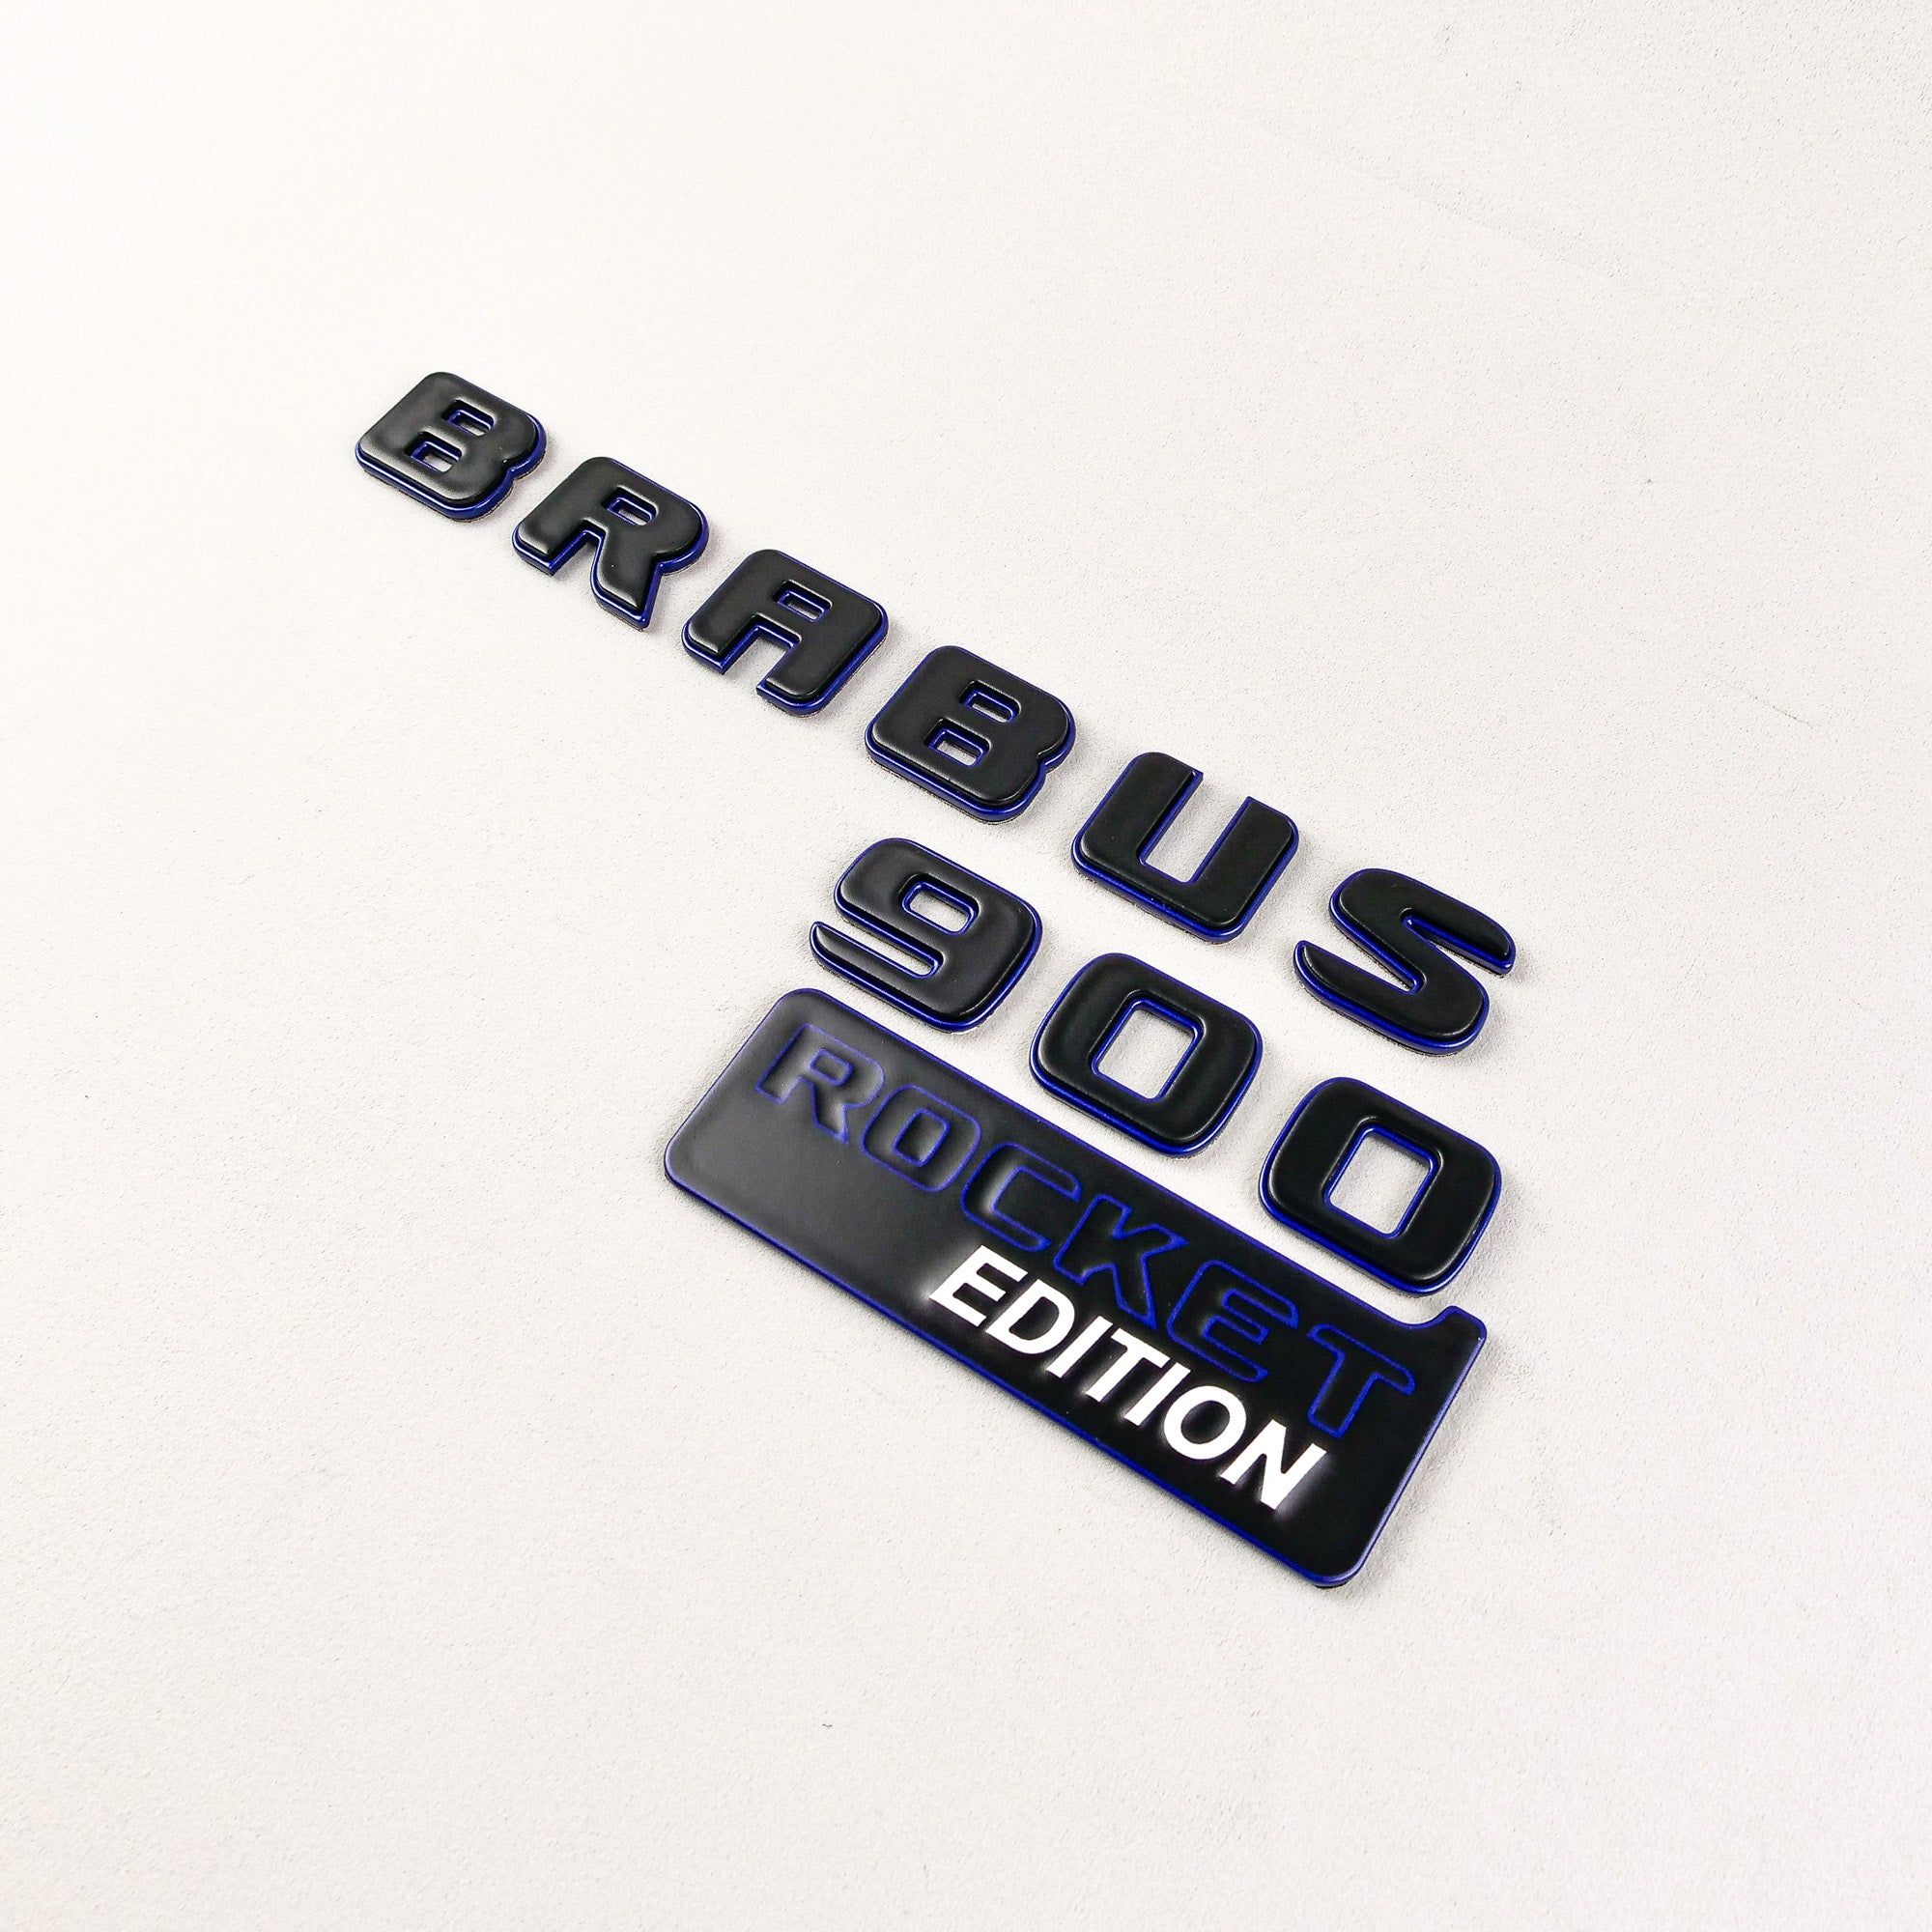 Set mit blauen Brabus 900 ROCKET Edition-Emblemen aus Metall für die Mercedes-Benz G-Klasse W463A